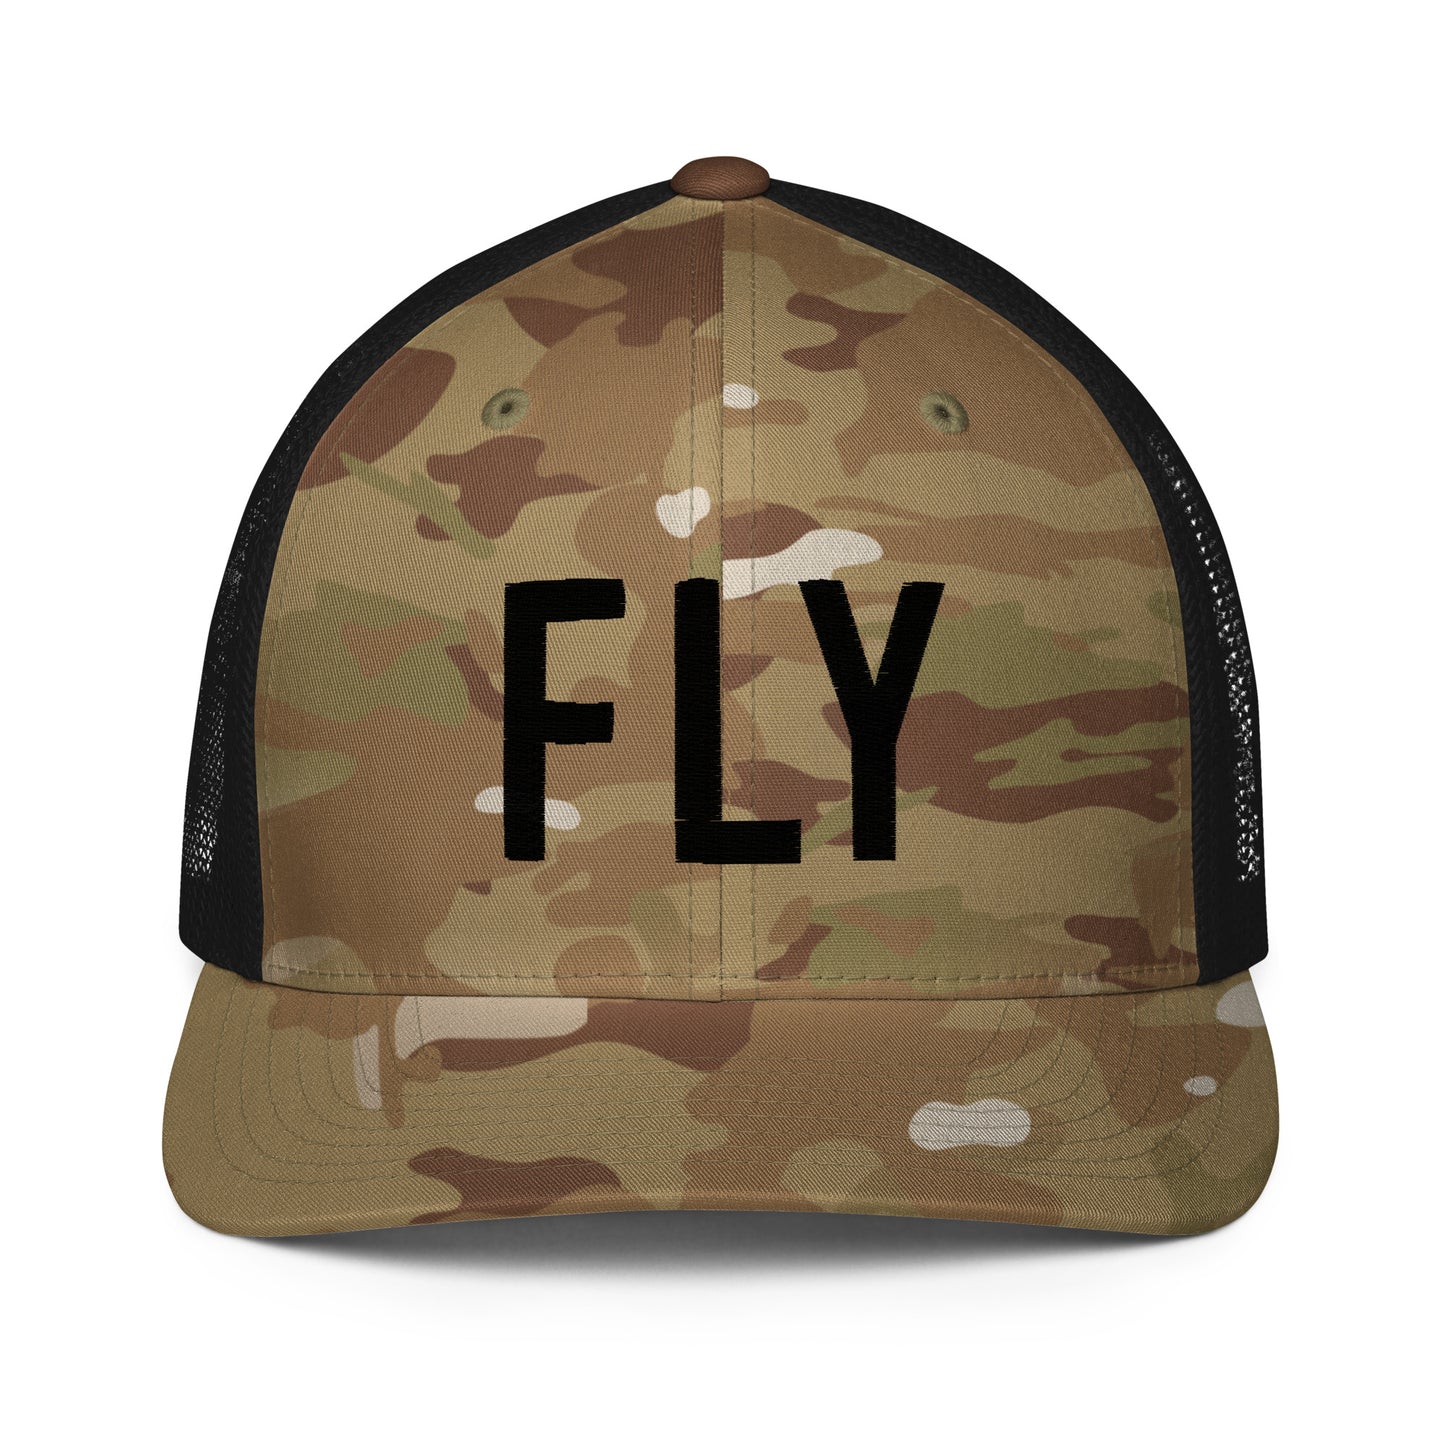 FLY Flexfit Trucker Hat